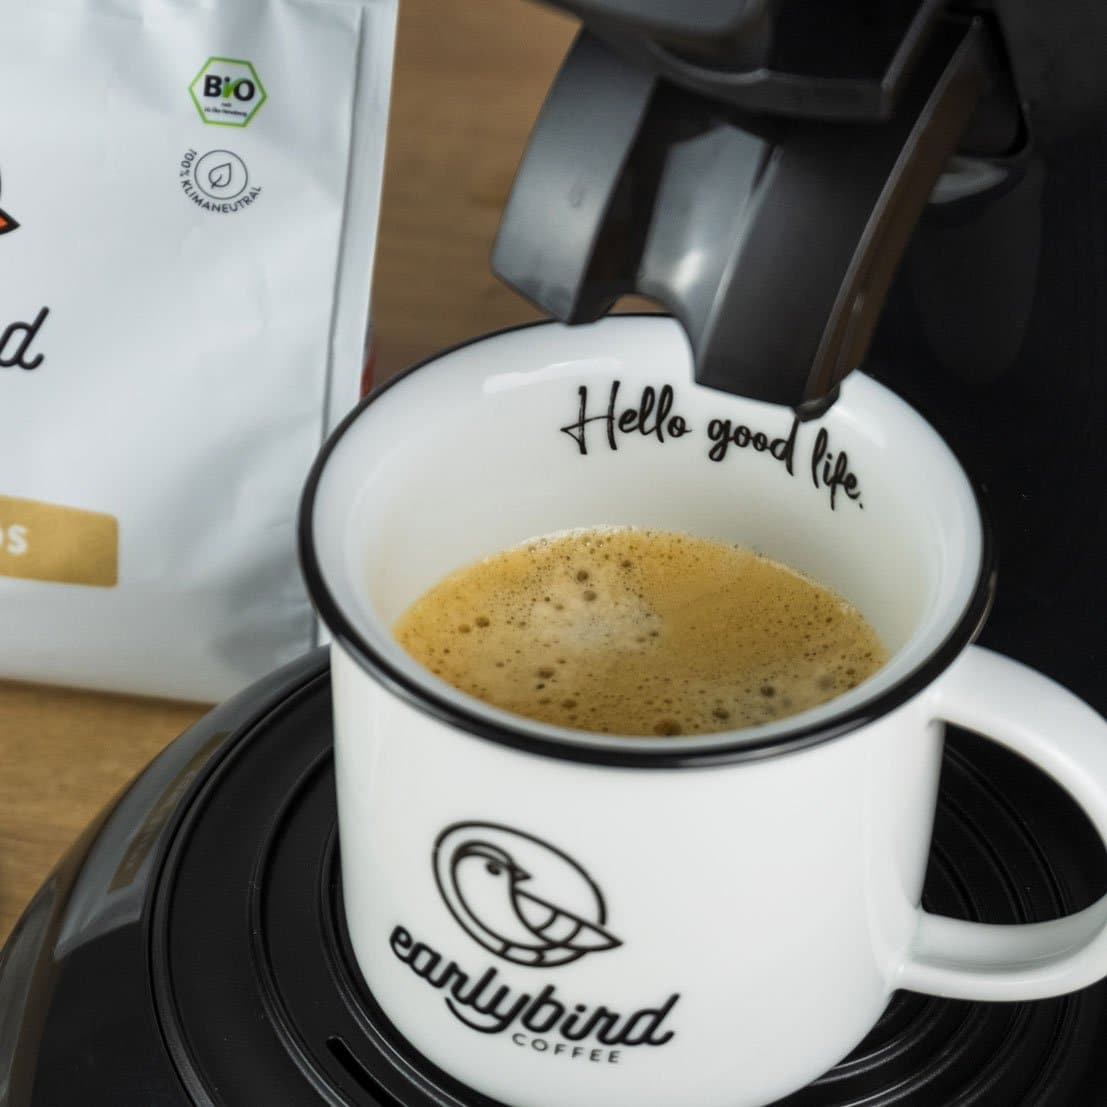 Eine frisch aufgebrühte Tasse Kaffee mit earlybird Kaffee-Pads aus einer Senseo-Padmaschine, die eine intensive Crema zeigt